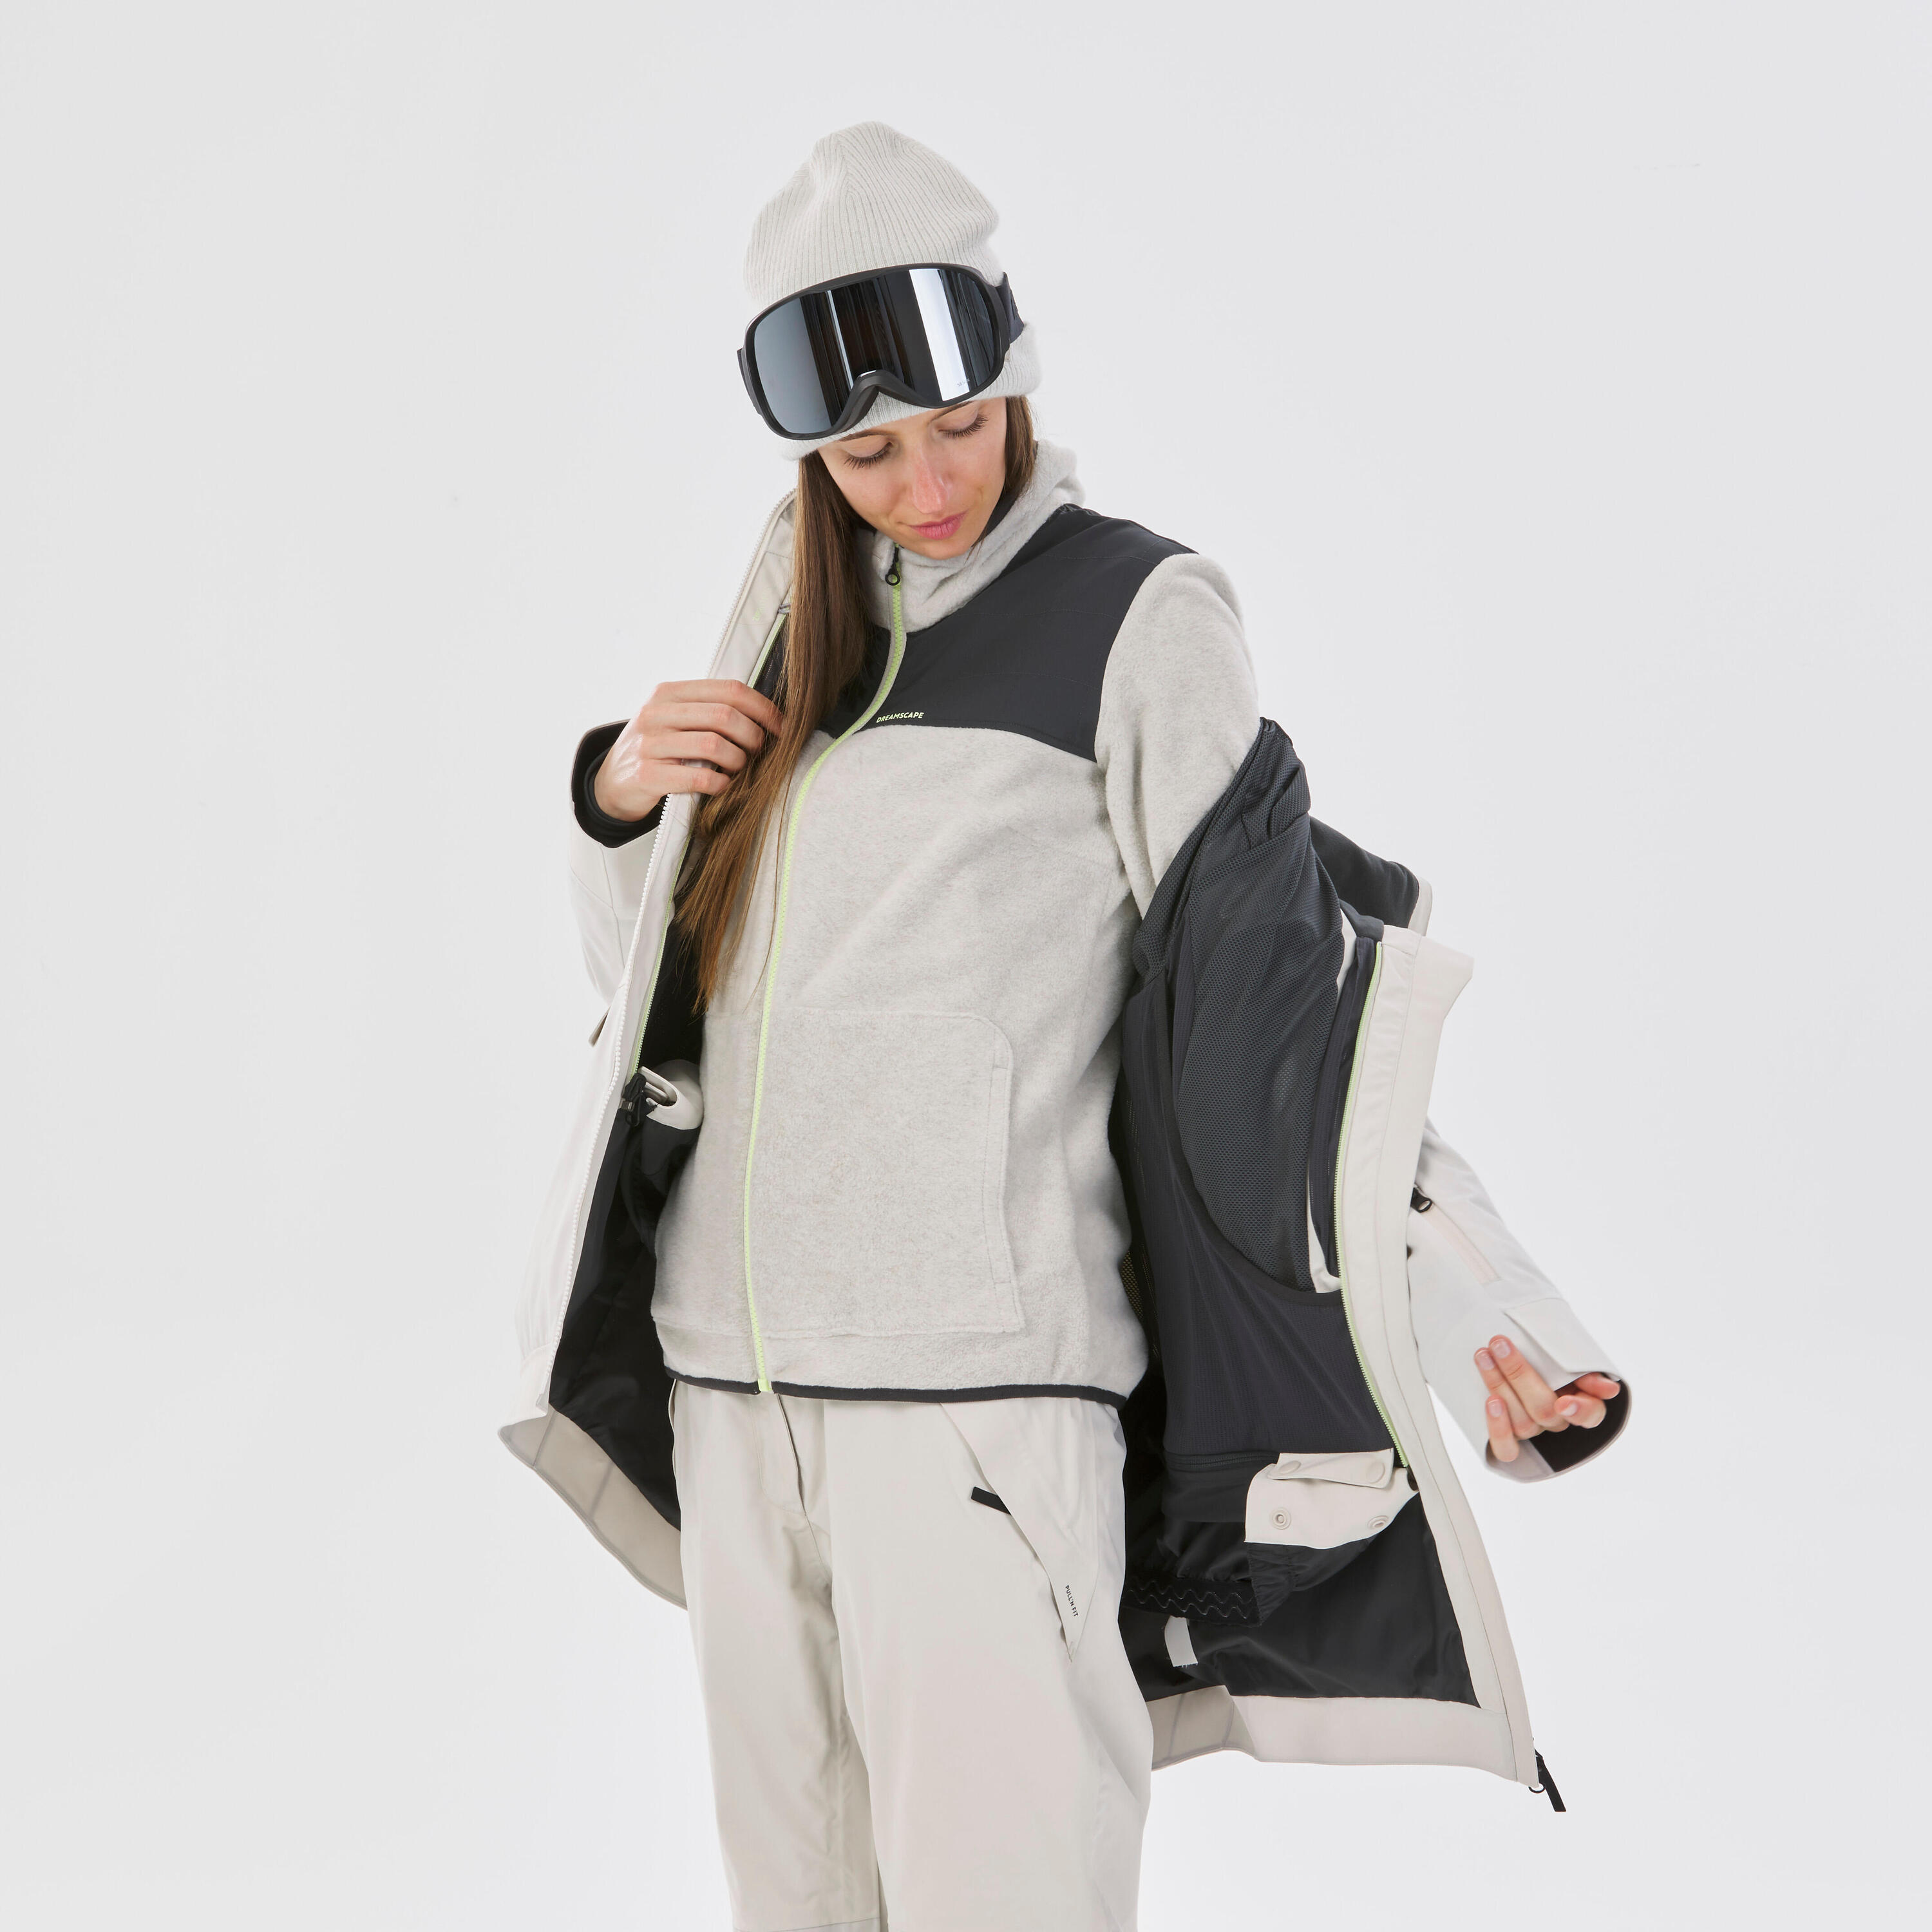 Women's 3-in-1 Durable Snowboard Jacket - SNB 900 - Beige 8/22